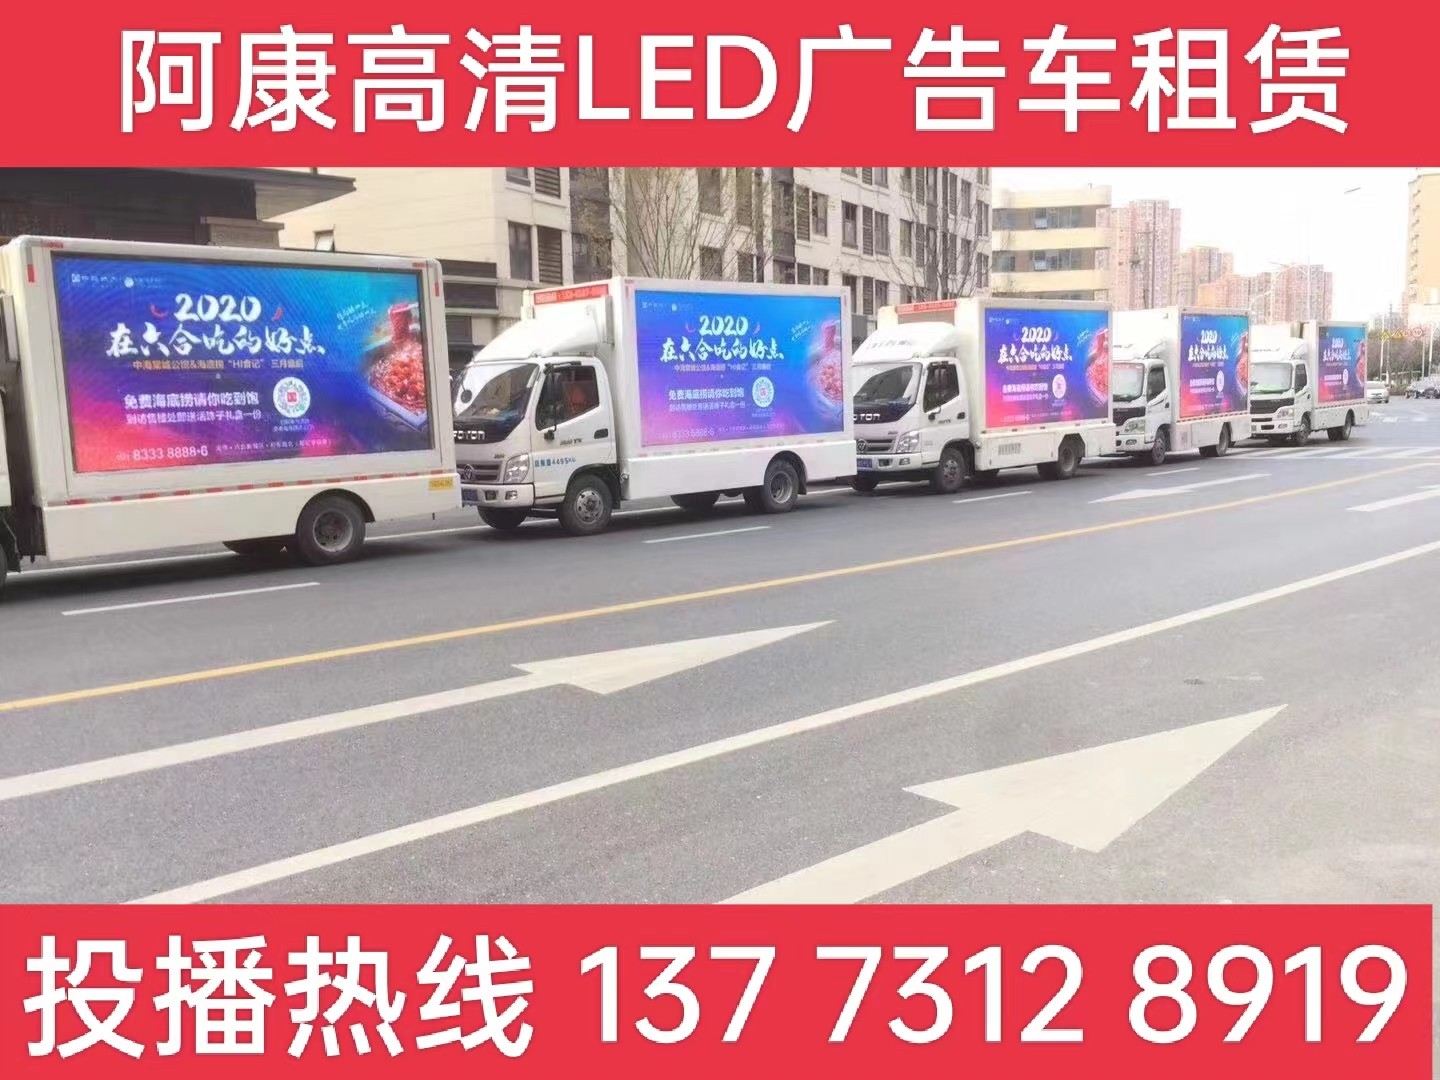 江宁区宣传车出租-海底捞LED广告